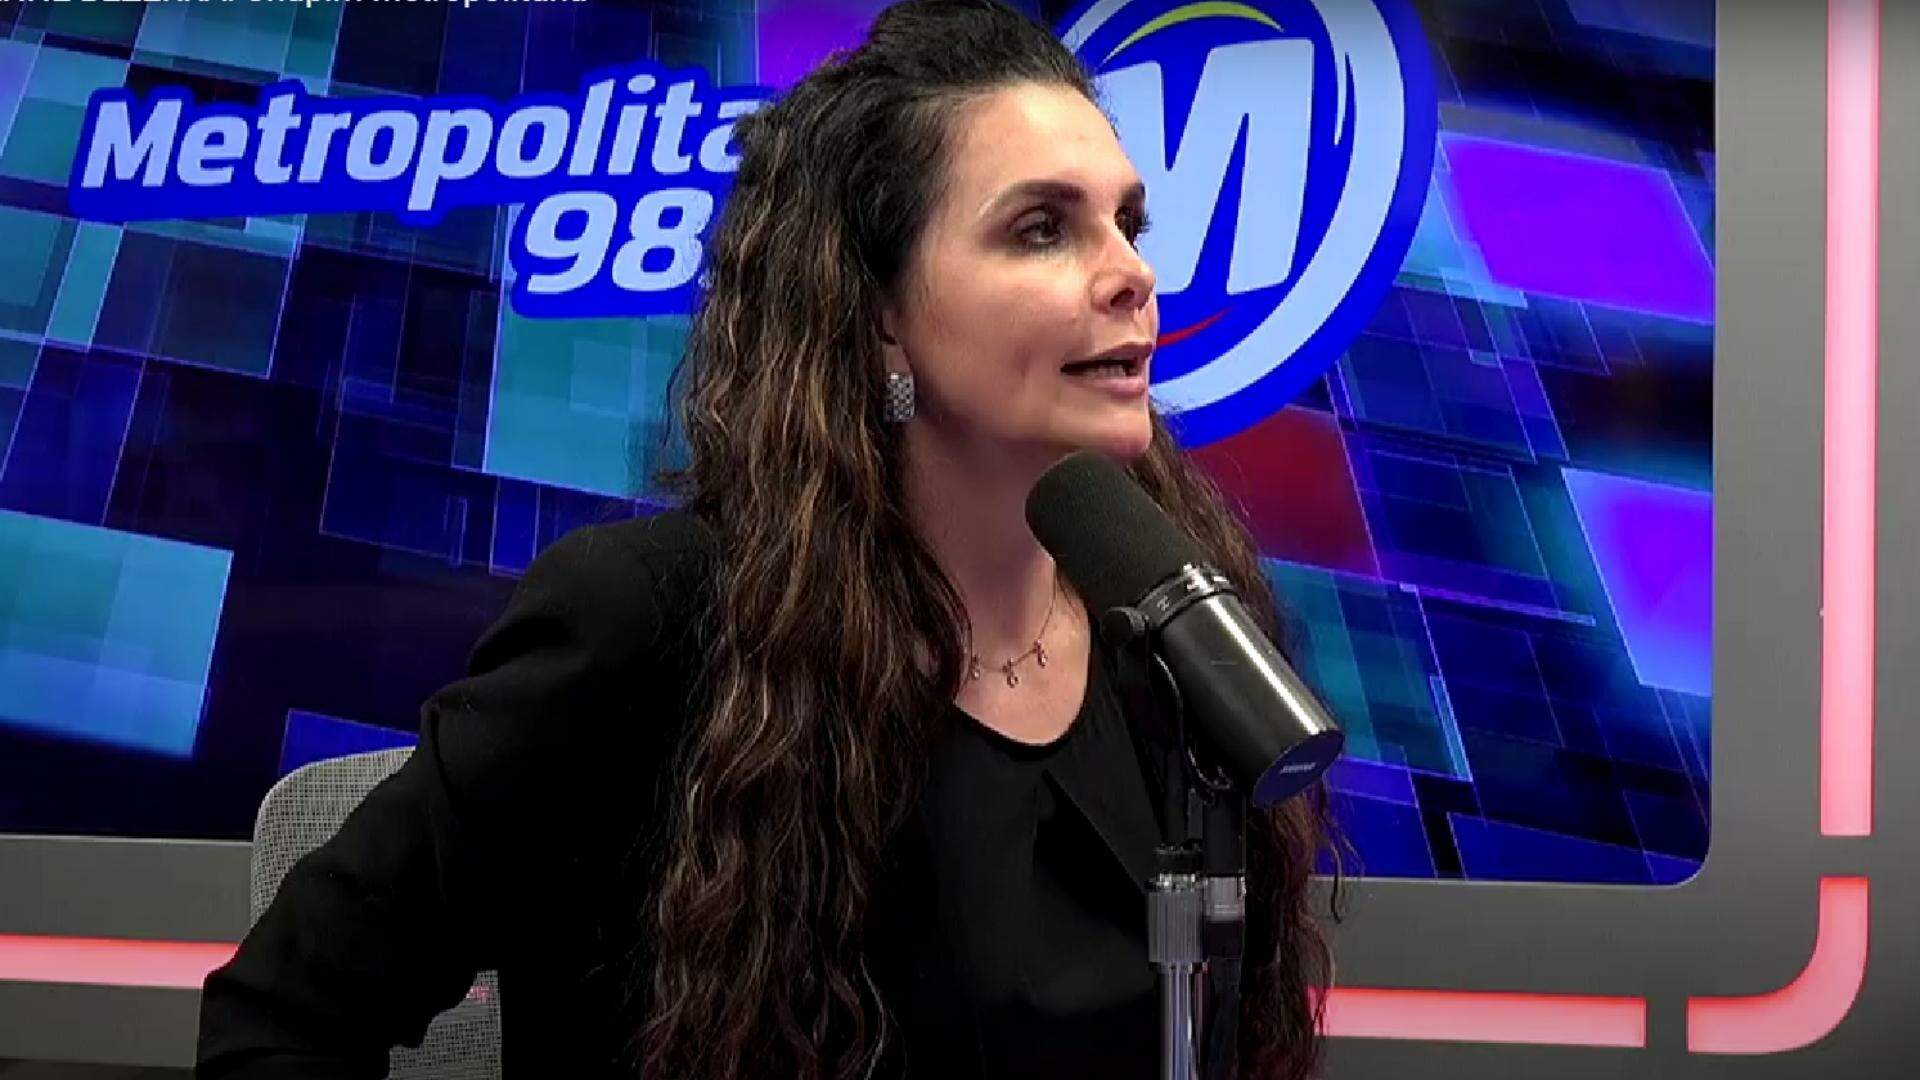 Luiza Ambiel quebra o silêncio e fala a verdade sobre briga com irmã de Deolane: “Bafo é de família” - Metropolitana FM